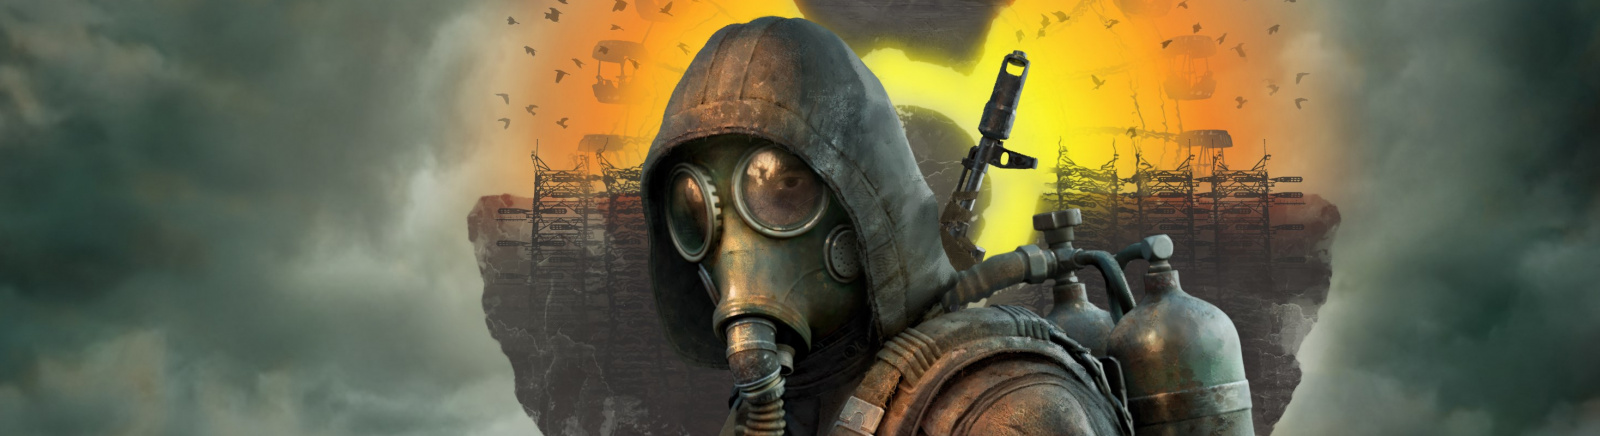 Дата выхода S.T.A.L.K.E.R. 2: Heart of Chornobyl (Сталкер 2)  на PC и Xbox Series X в России и во всем мире